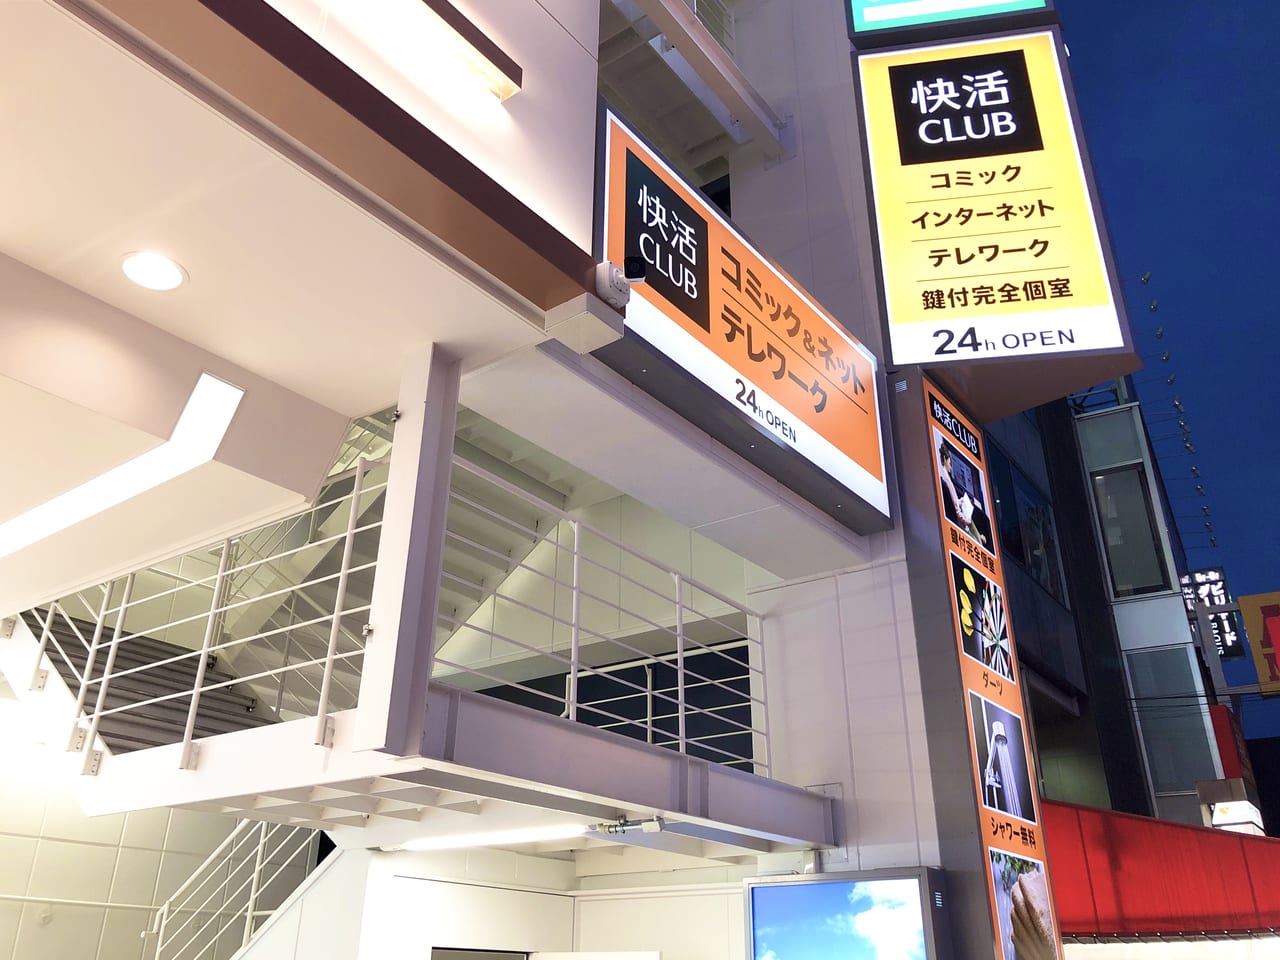 町田市 オープンが延期になっていた 快活club 小田急町田駅前店 が7月1日から営業開始します 快適すぎて部屋から出てこられなくなるかも 号外net 町田市